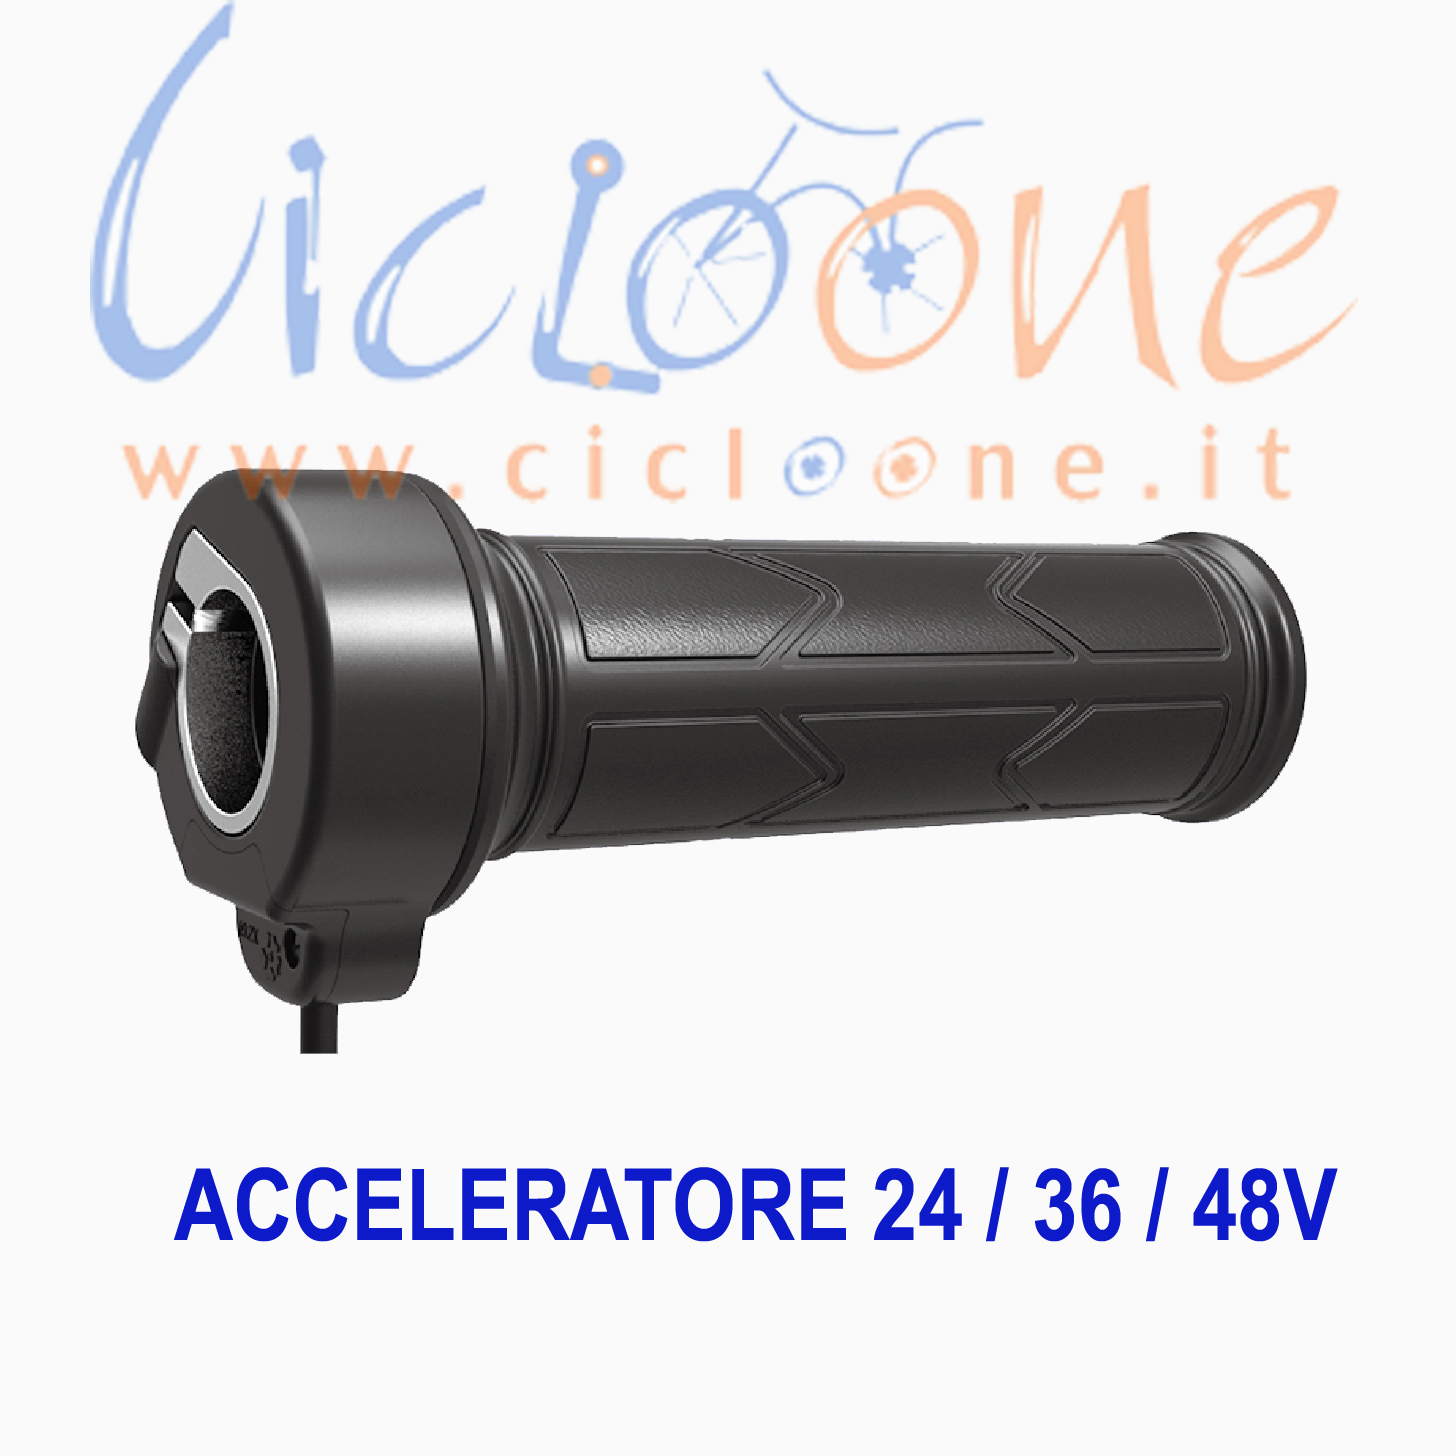 Acceleratore 48 Volt - Monopattino Elettrico, Bici Elettrica, E-Bike, quad